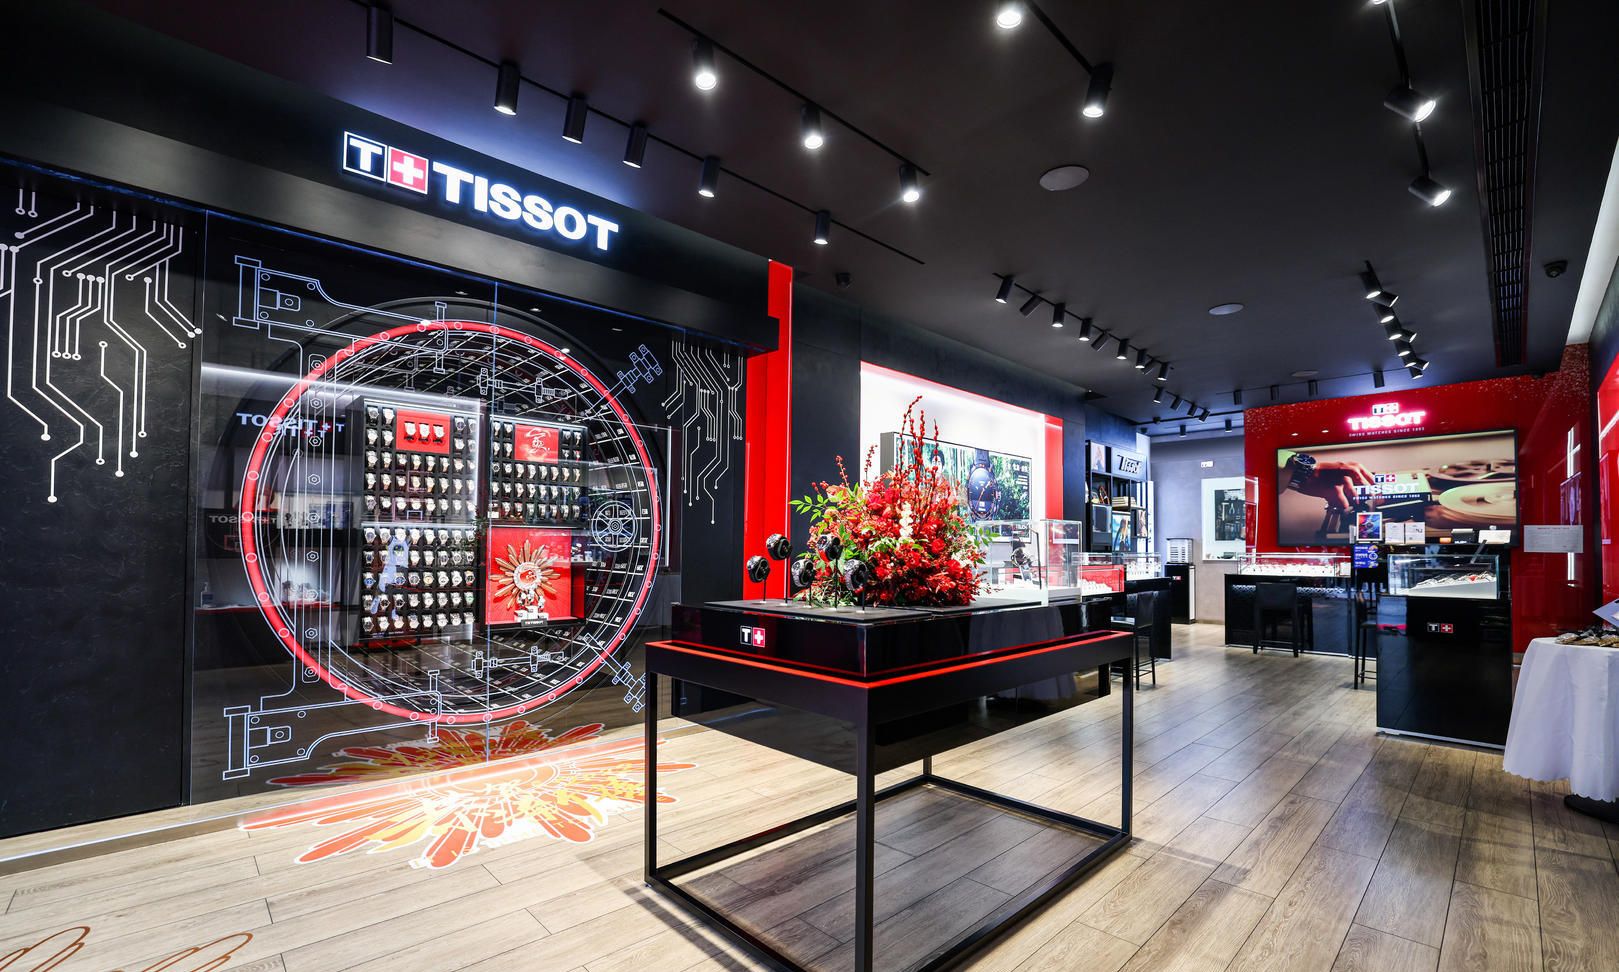 1月17日,瑞表集团旗下制表品牌tissot天梭表成都春熙路步行街店揭幕